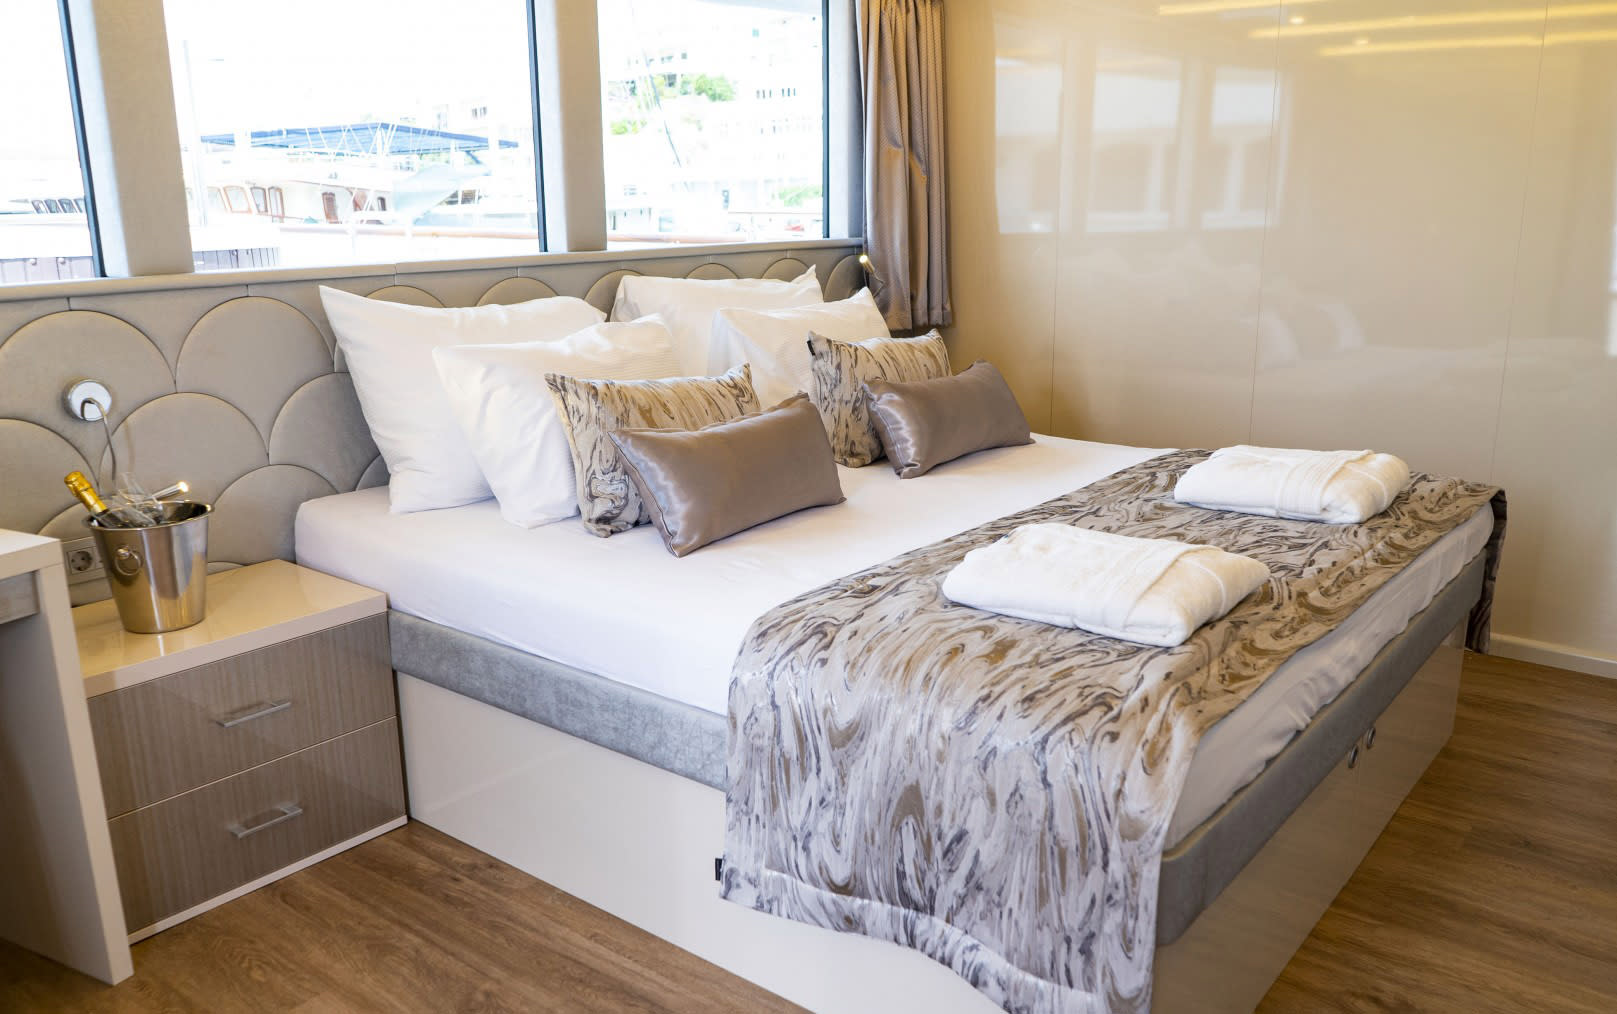 croatian islands luxury yacht cruise